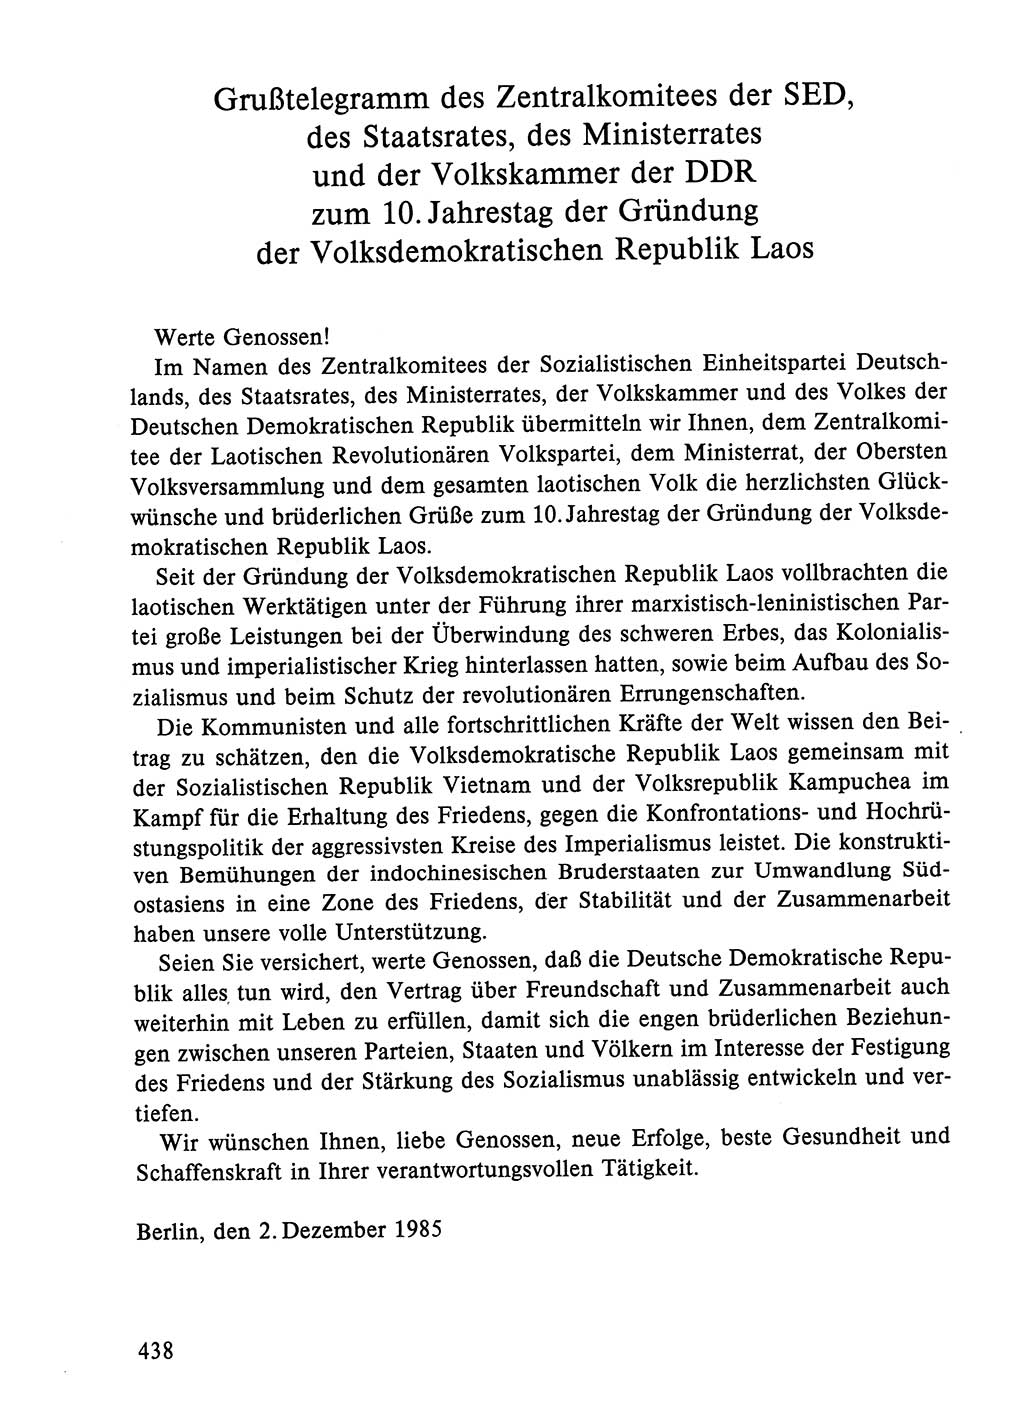 Dokumente der Sozialistischen Einheitspartei Deutschlands (SED) [Deutsche Demokratische Republik (DDR)] 1984-1985, Seite 438 (Dok. SED DDR 1984-1985, S. 438)